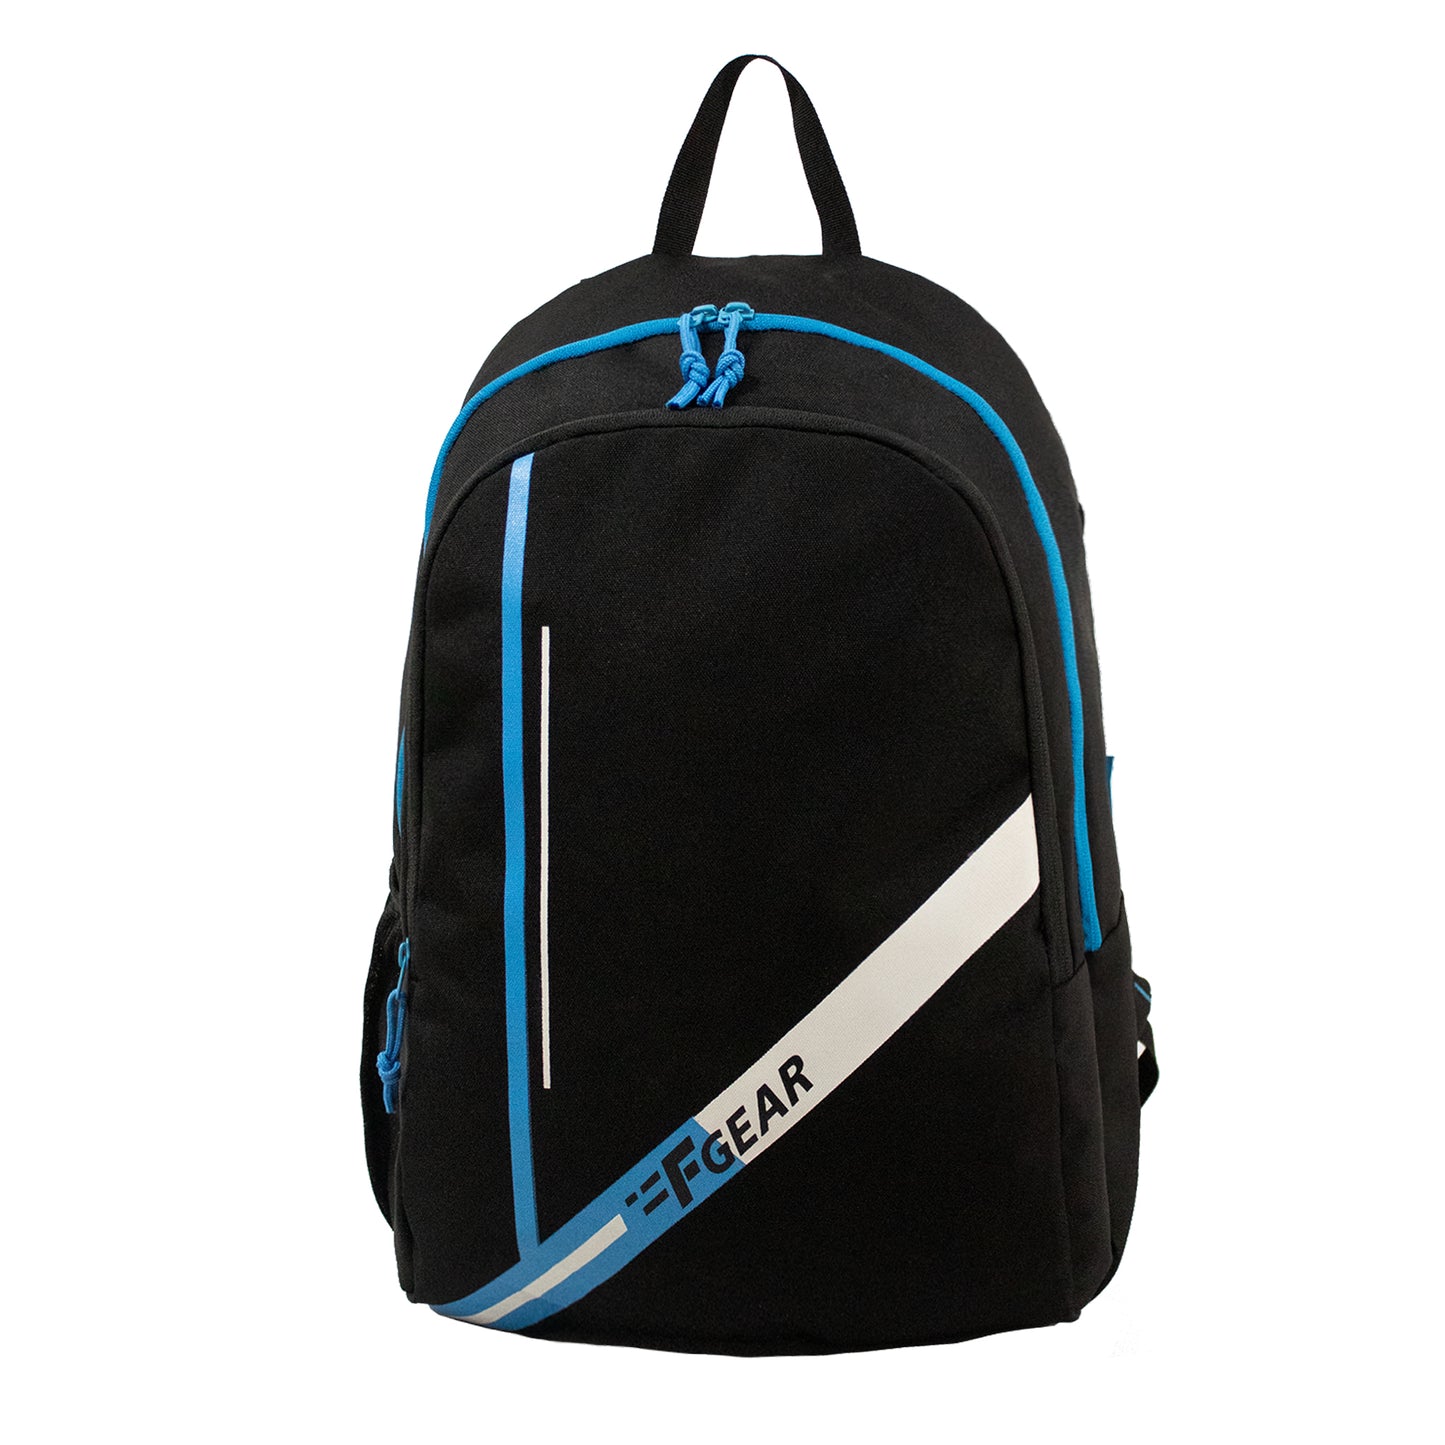 Frontier 25L Black Blue Backpack